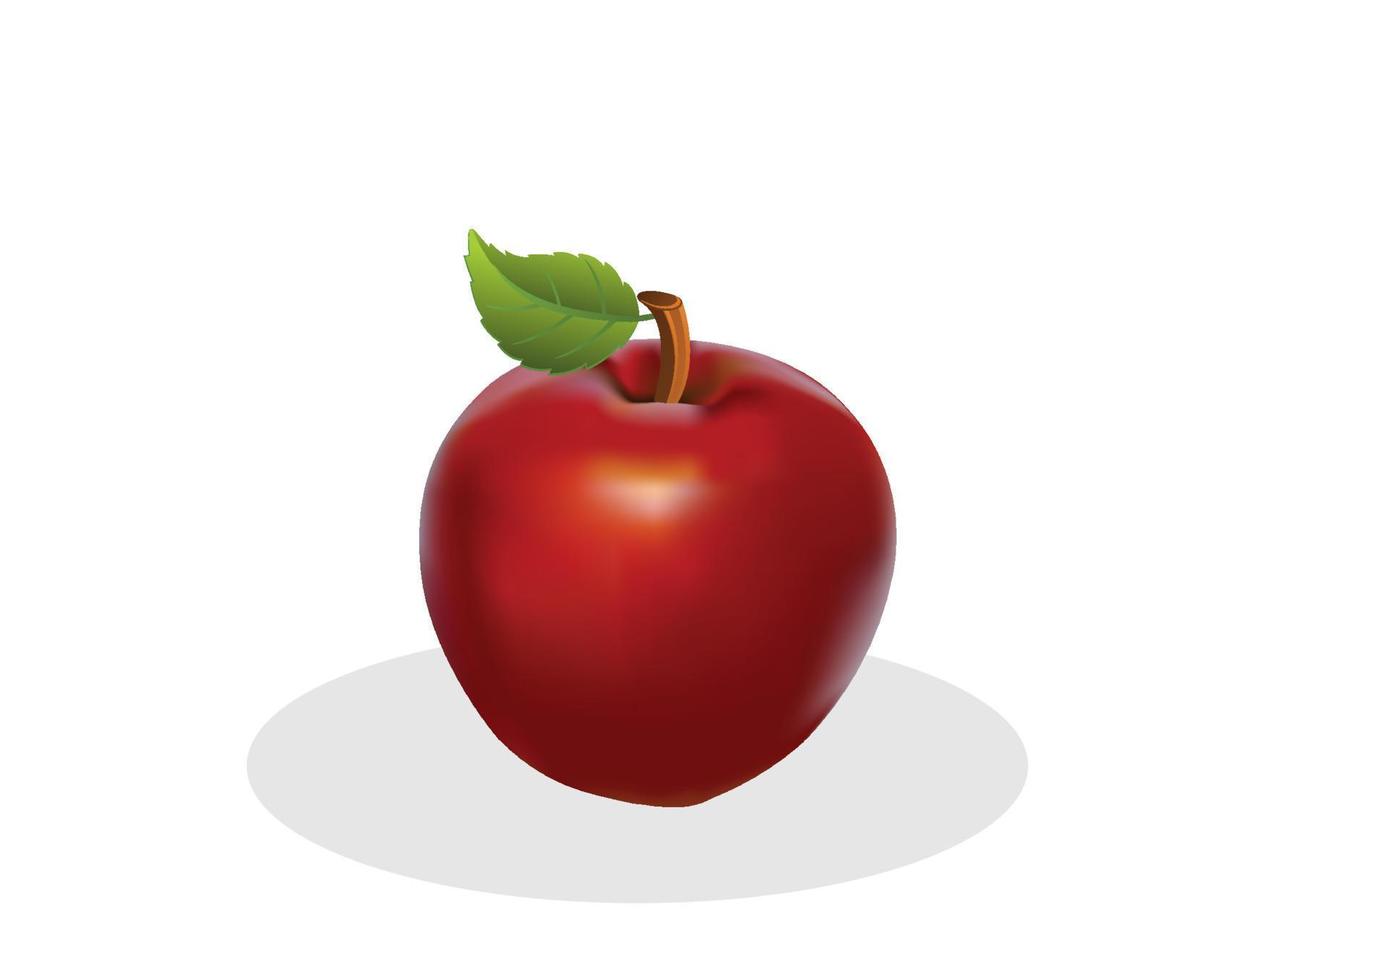 heldere rode appel met groen blad ontwerp geïsoleerd op een witte achtergrond vlakke stijl cartoon illustratie vector